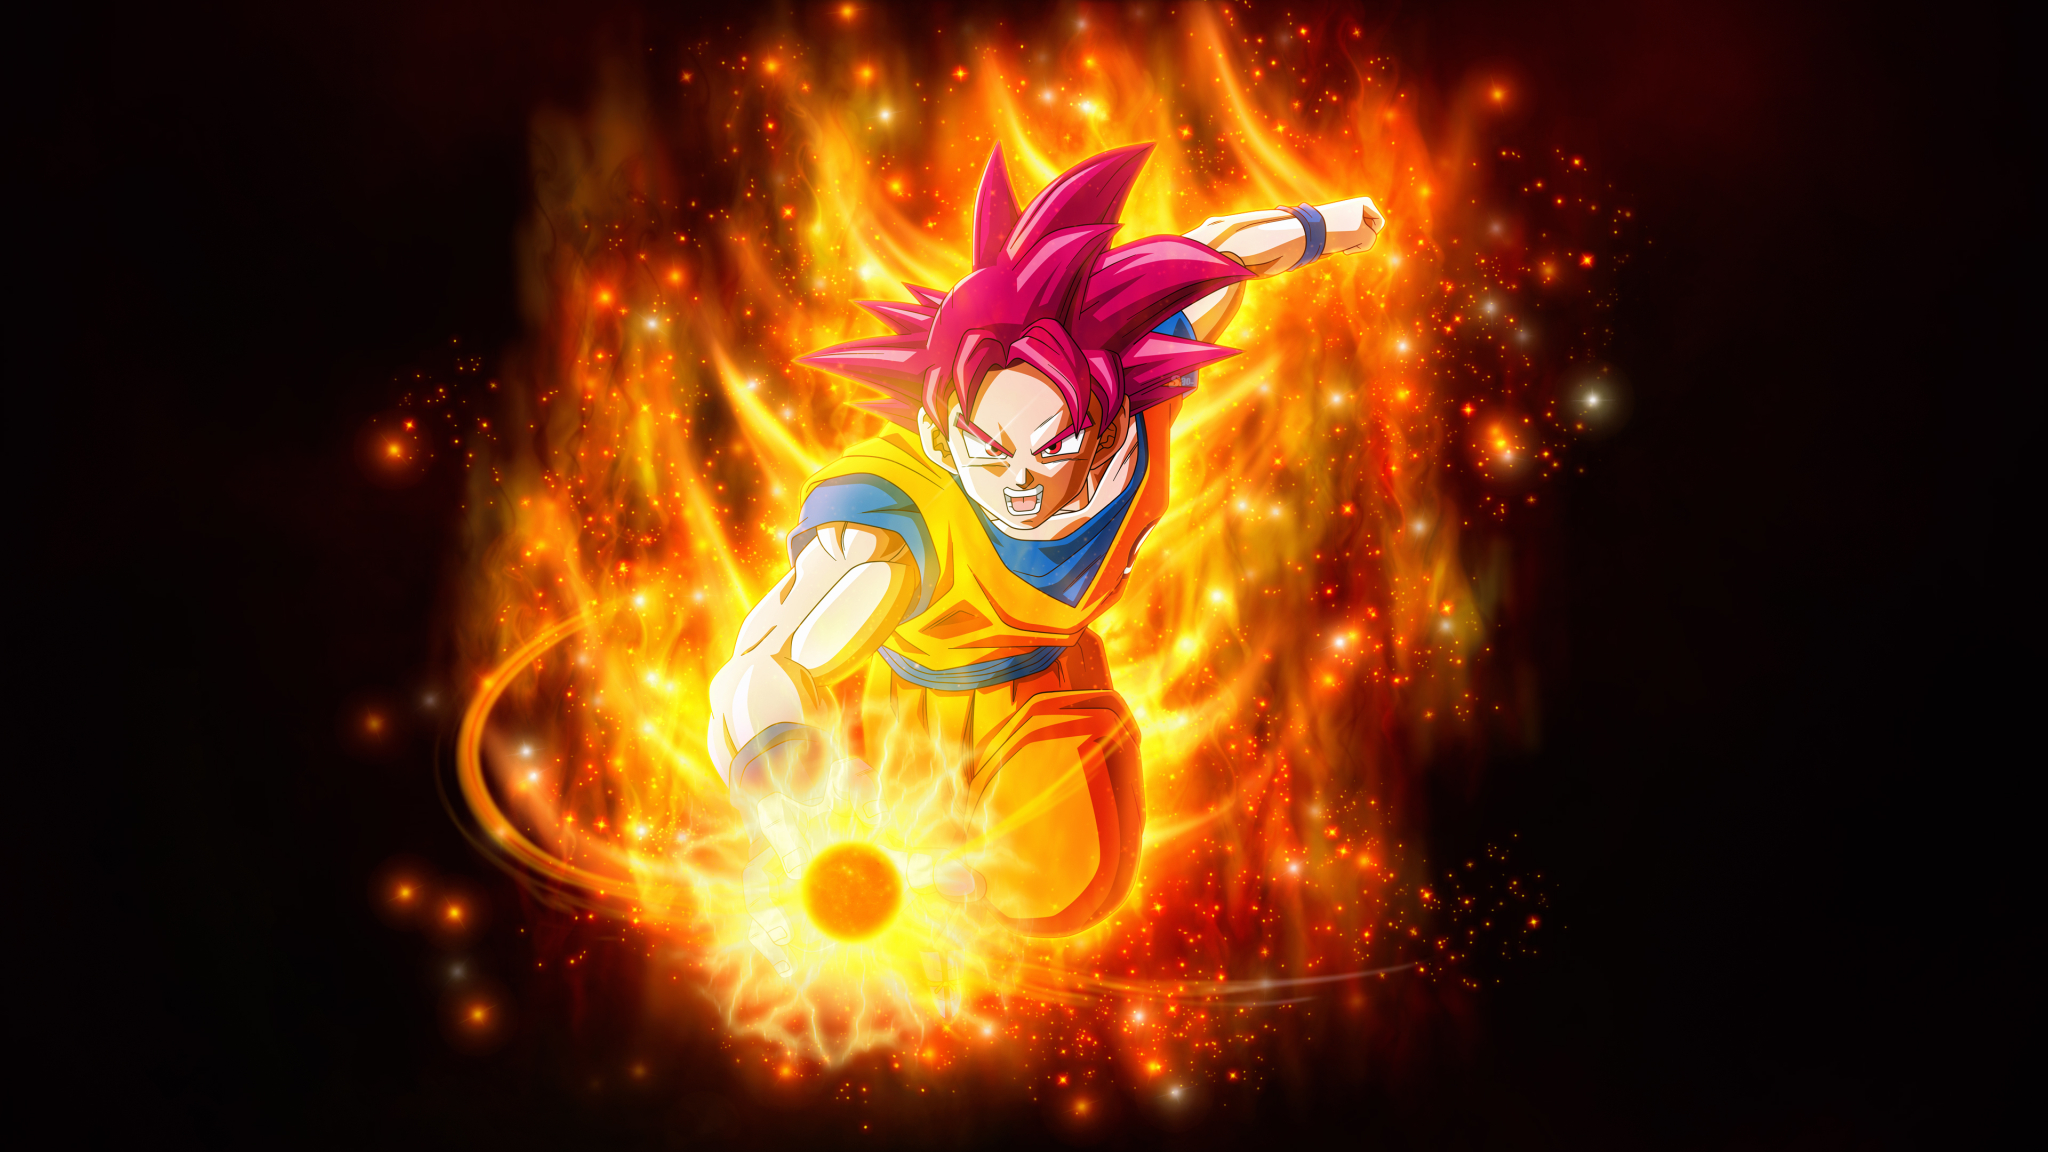 2048x1152 Super Saiyan God Goku Dragon Ball 2048x1152 Resolution